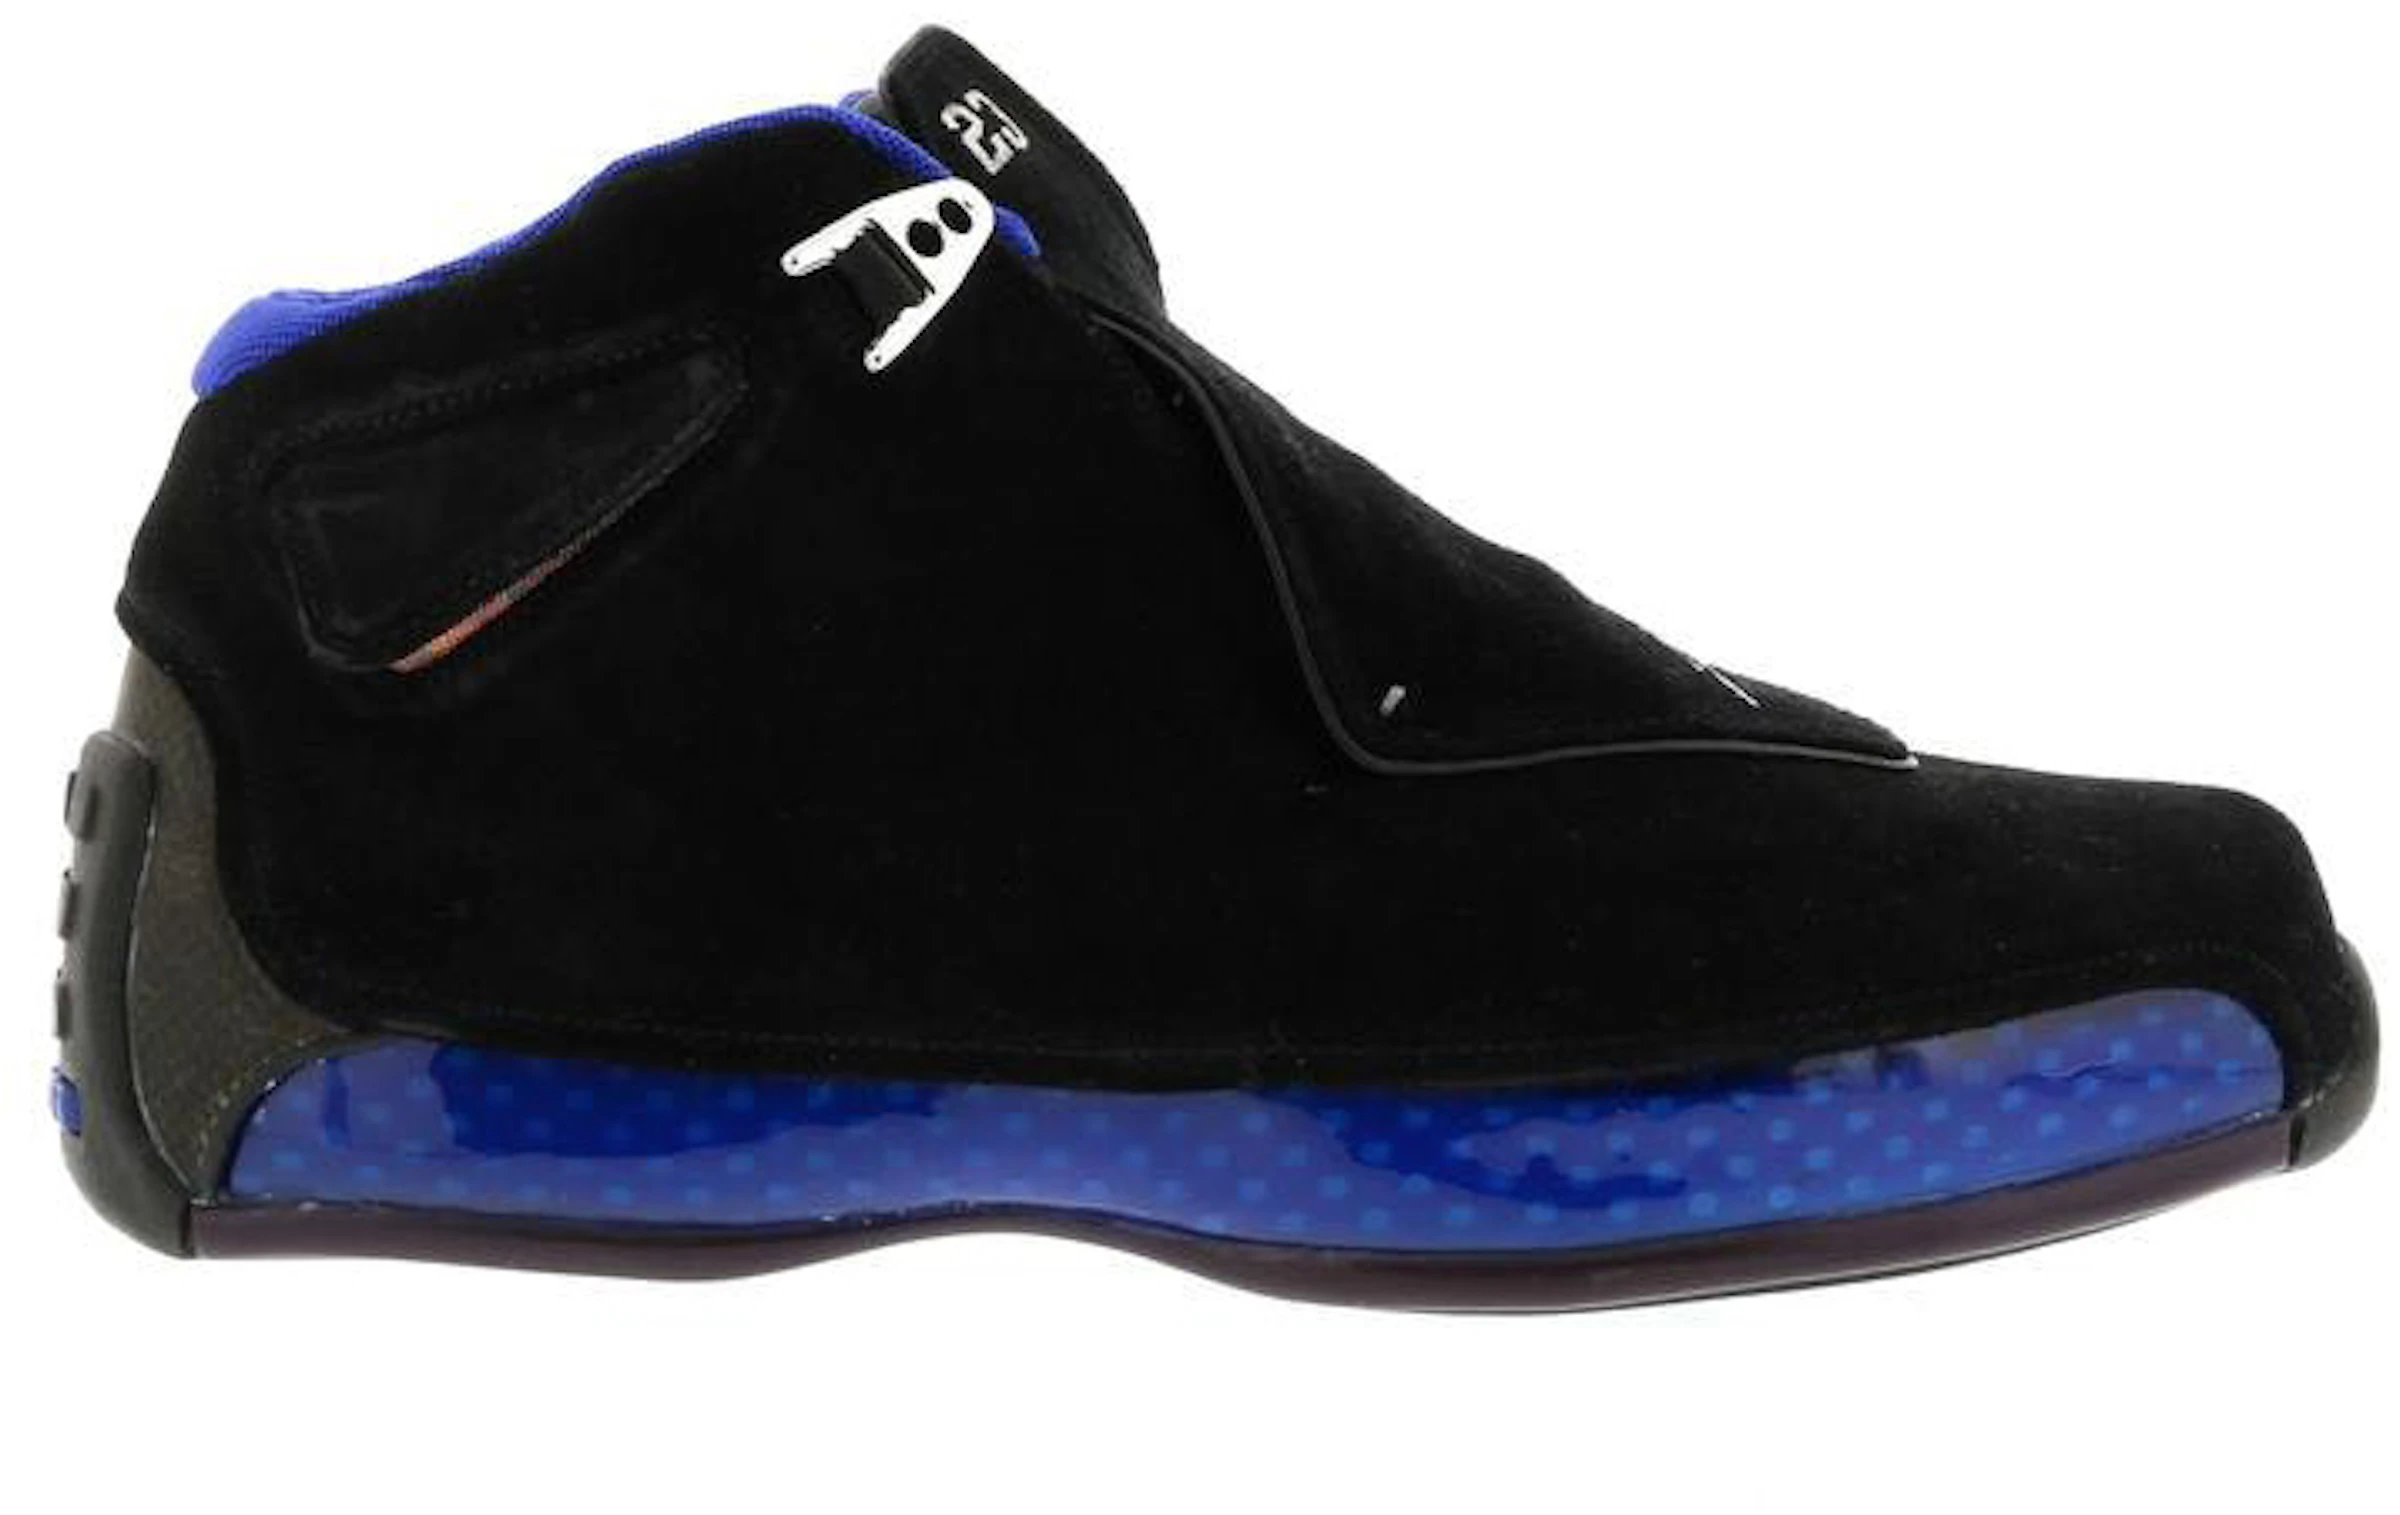 Compra Air Jordan 18 Calzado y sneakers - StockX